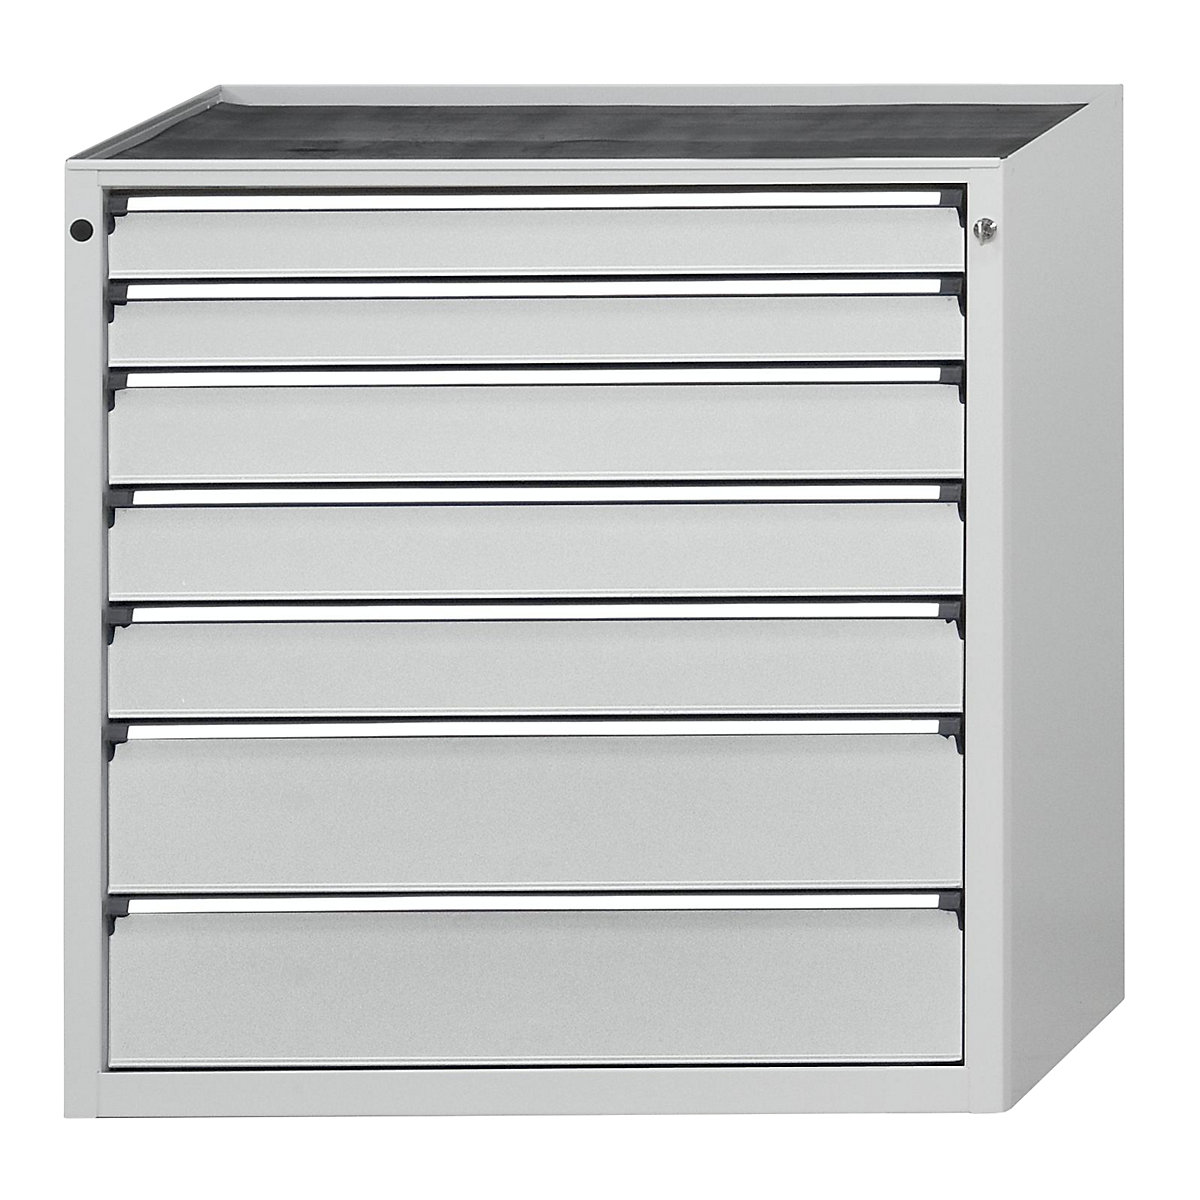 Zásuvková skříň – ANKE, š x h 910 x 675 mm, nosnost zásuvky 200 kg, 7 zásuvek, výška 980 mm, čelo světle šedé